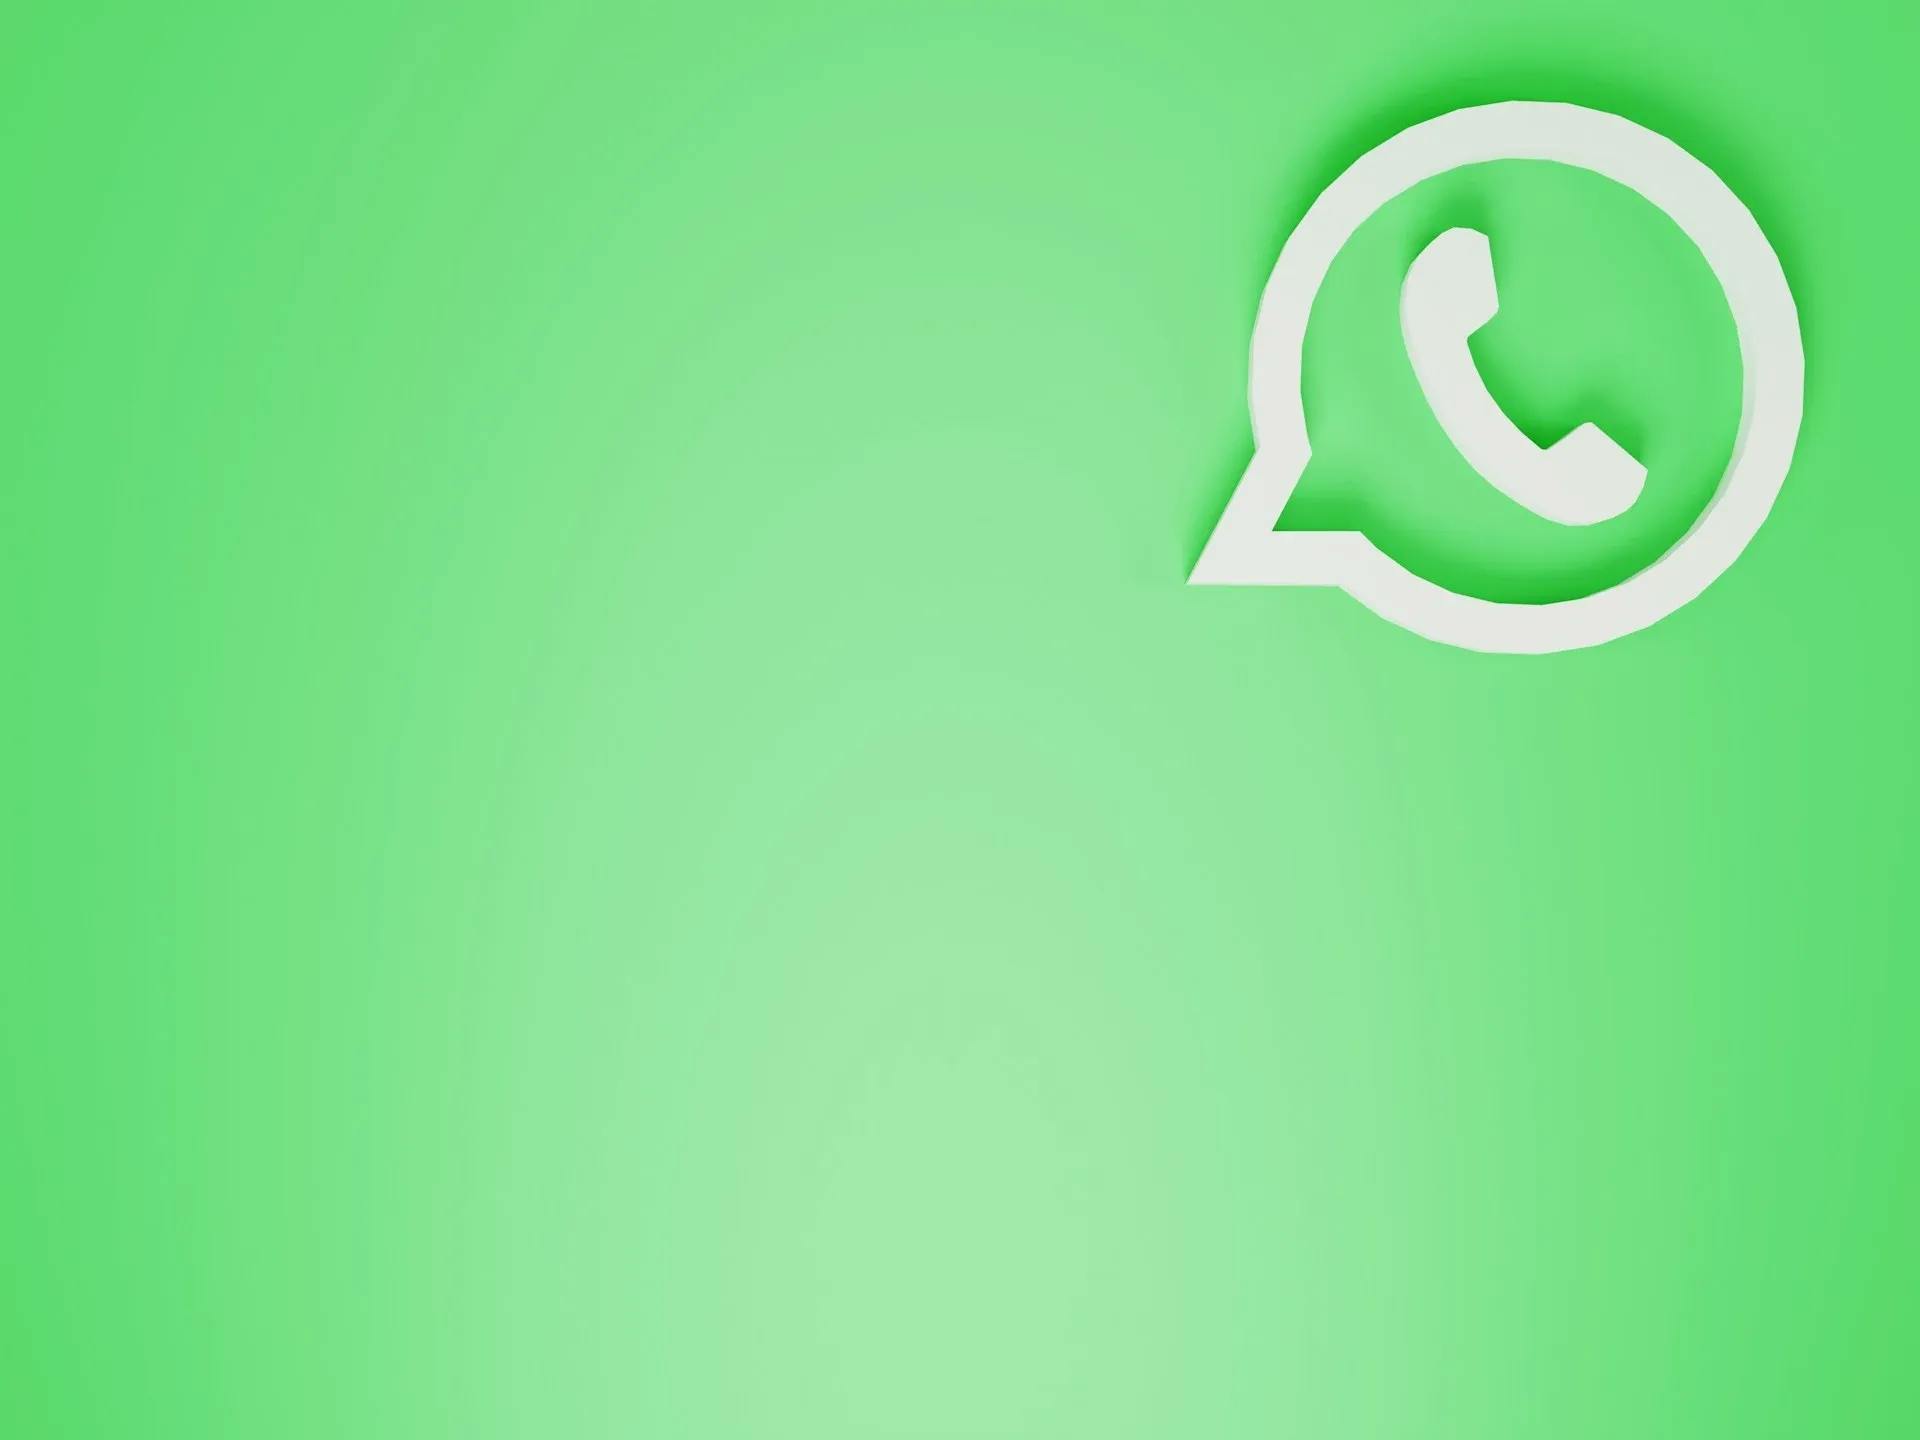 Petunjuk Praktis: Cara Mudah Membuat Polling di WhatsApp Android